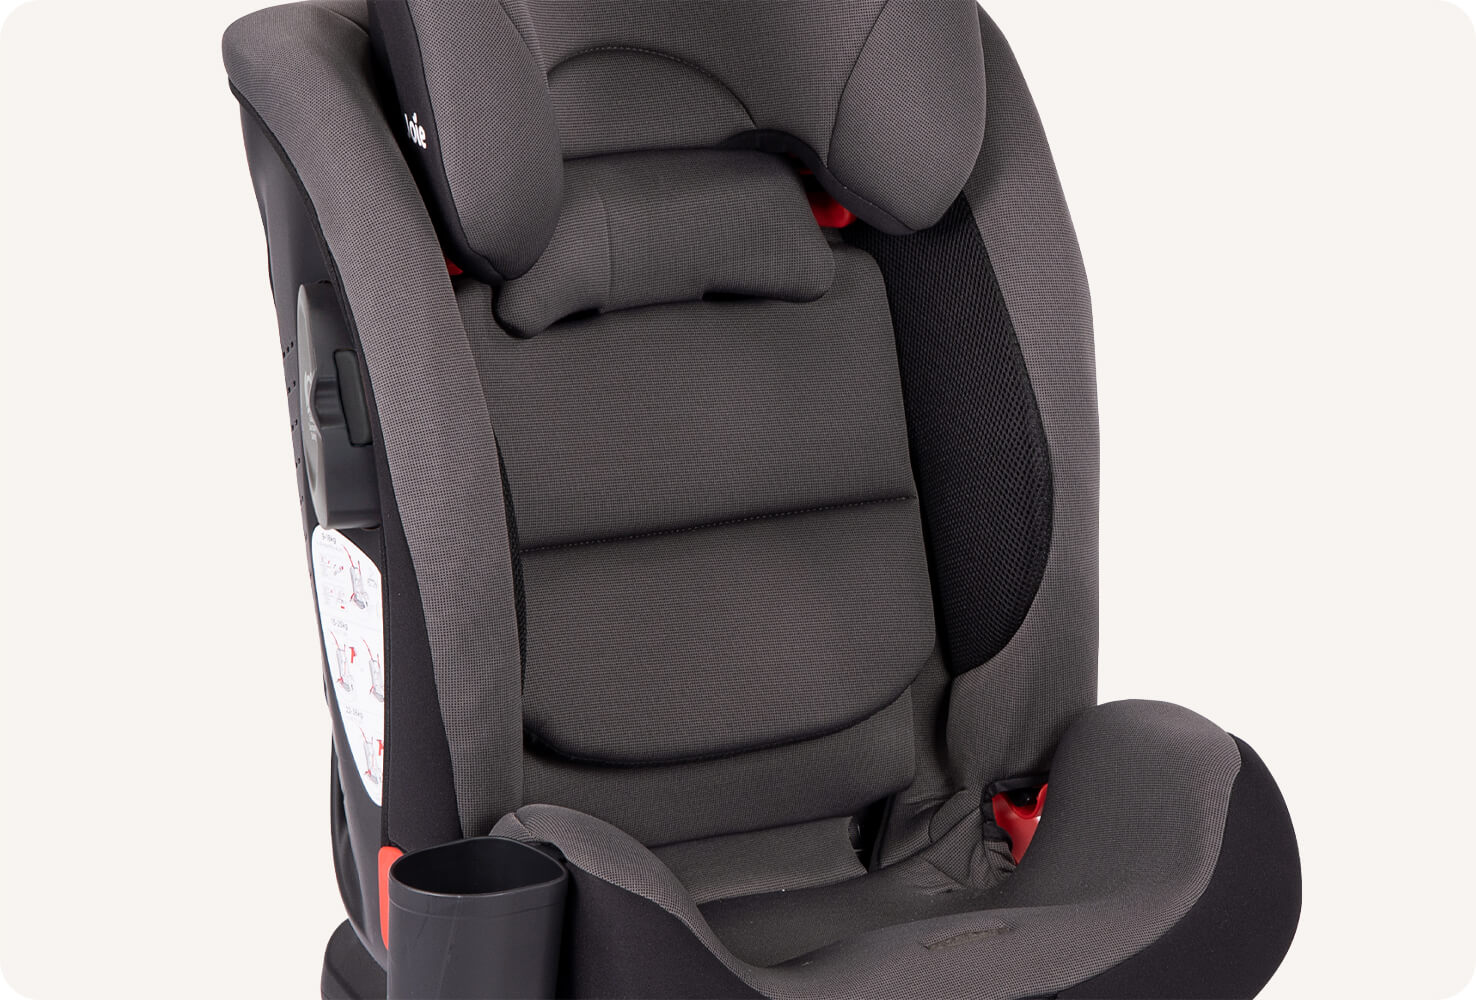 Gros plan de la partie inférieure d'un siège auto pour enfant Joie bold R gris foncé pour montrer le porte-gobelet attaché.